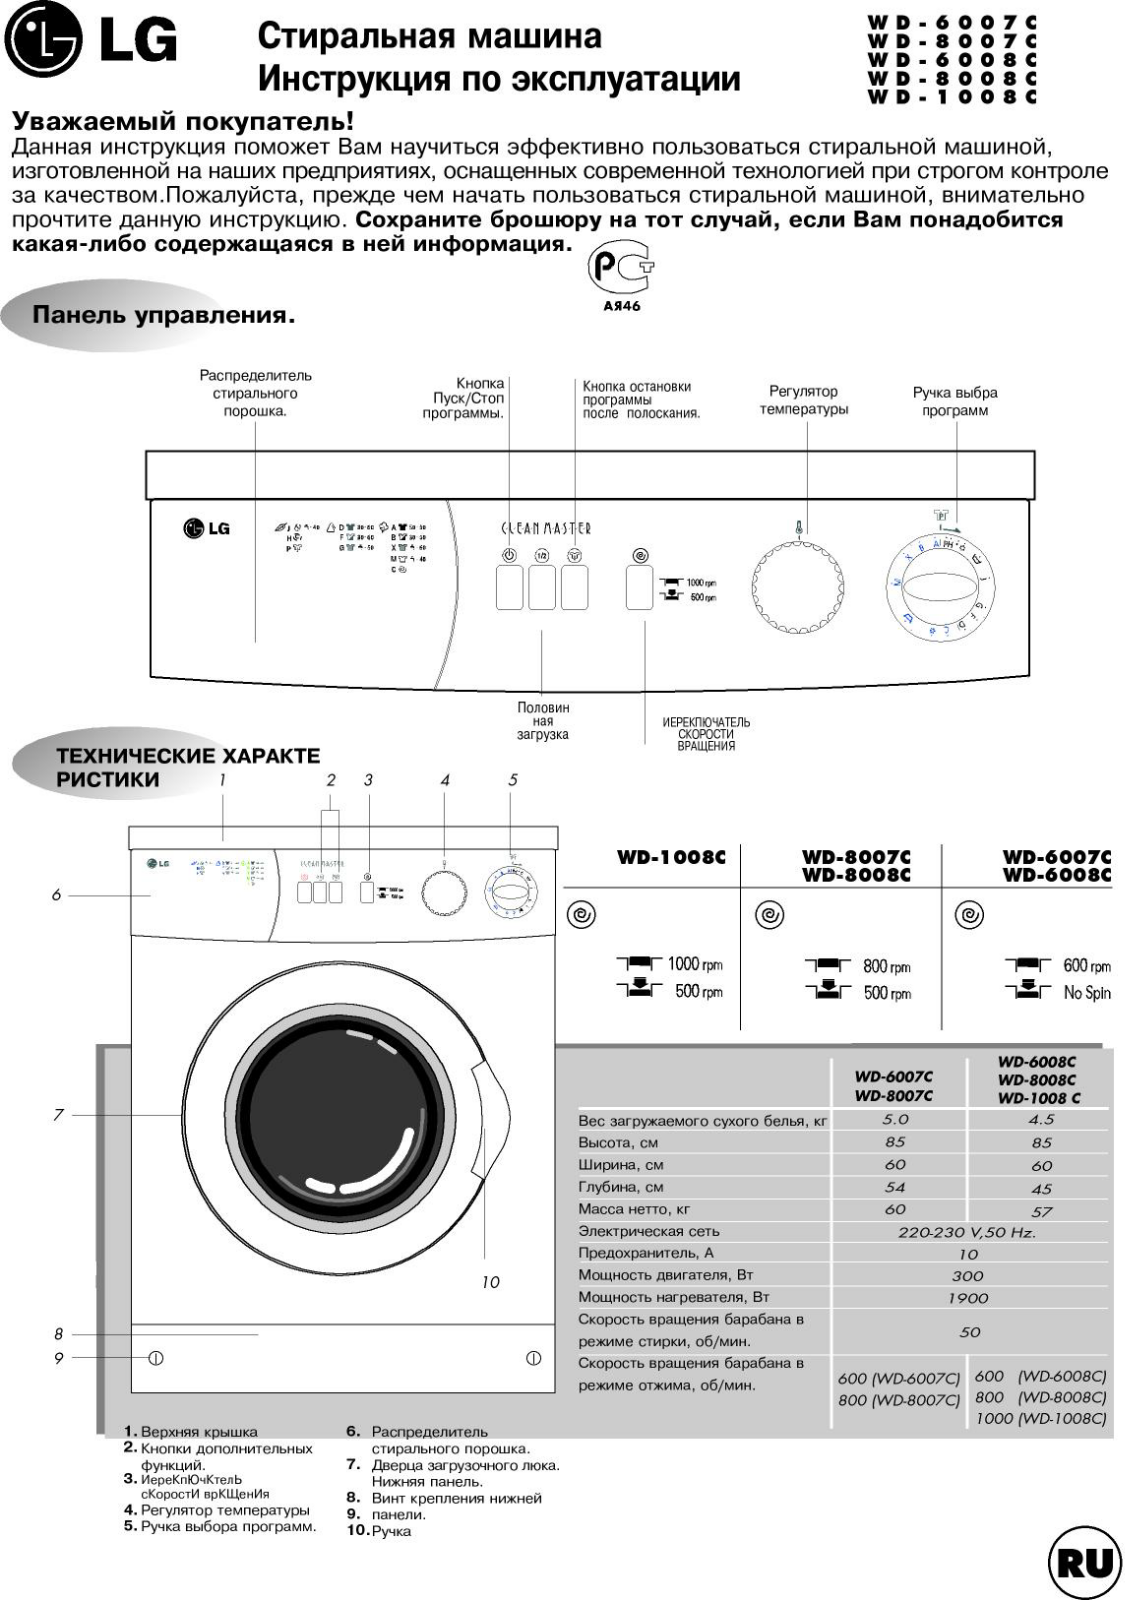 LG WD-8007C User Manual